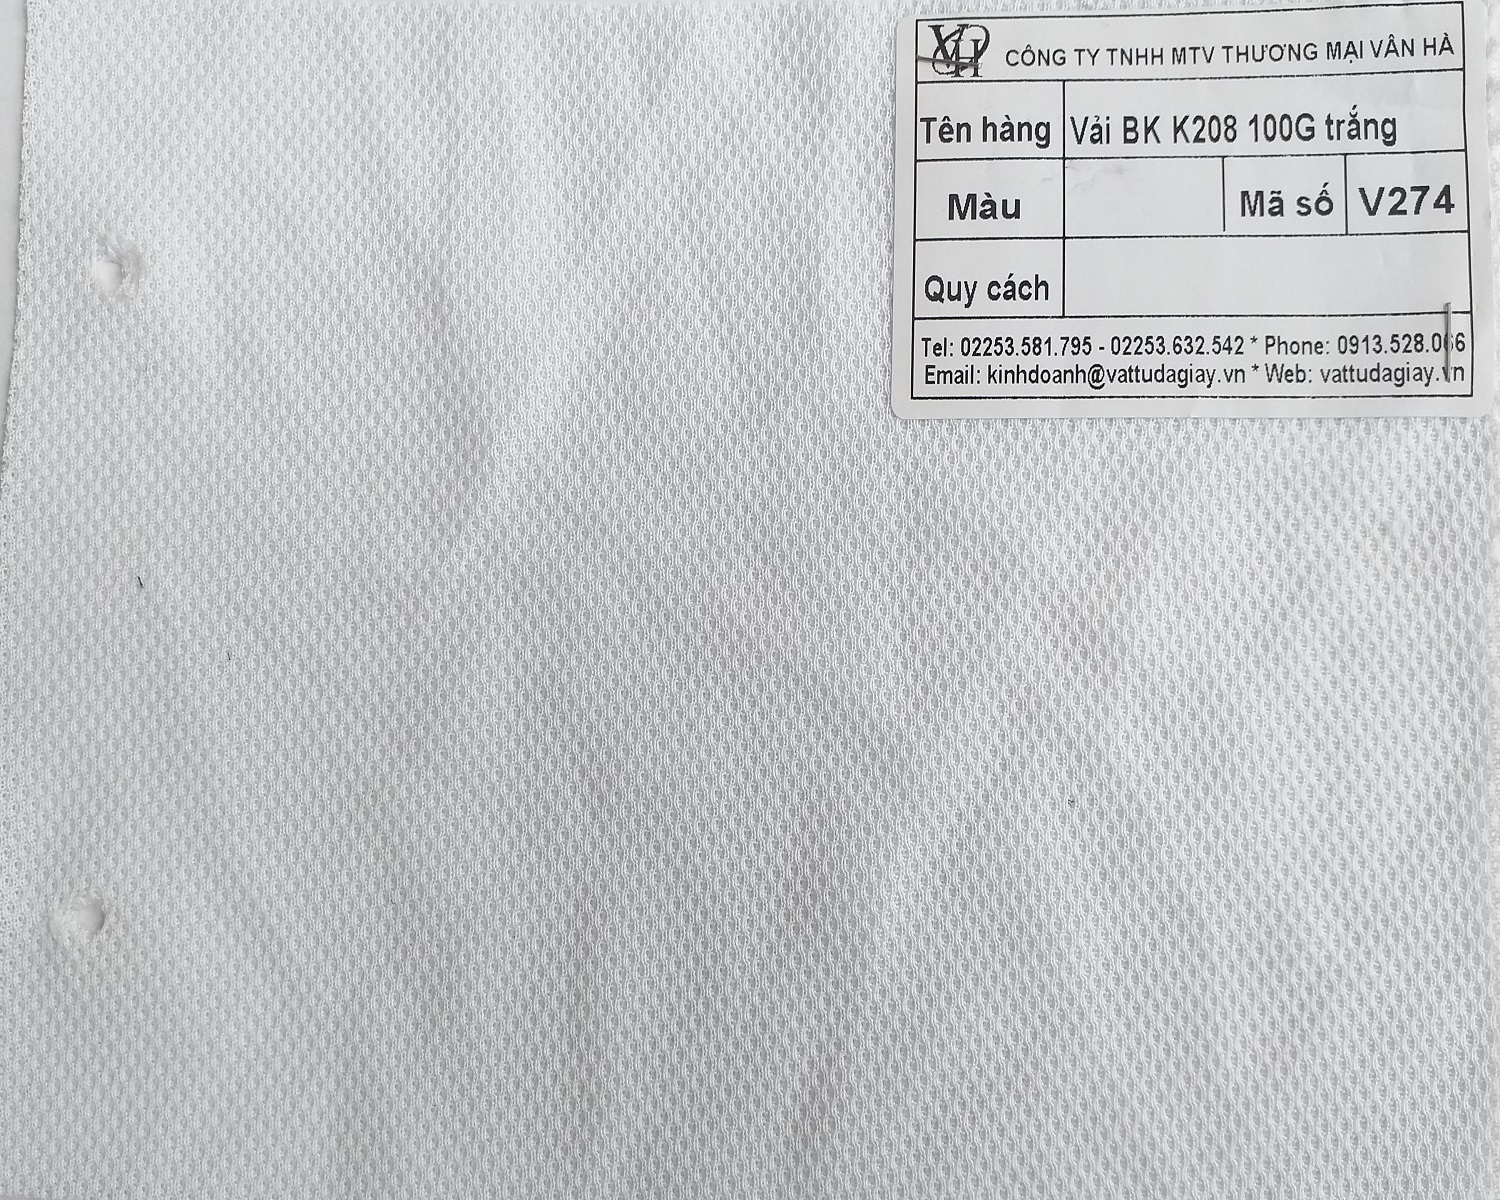 vai bk k208 trang ma v274 - Vải BK K208 trắng mã V274